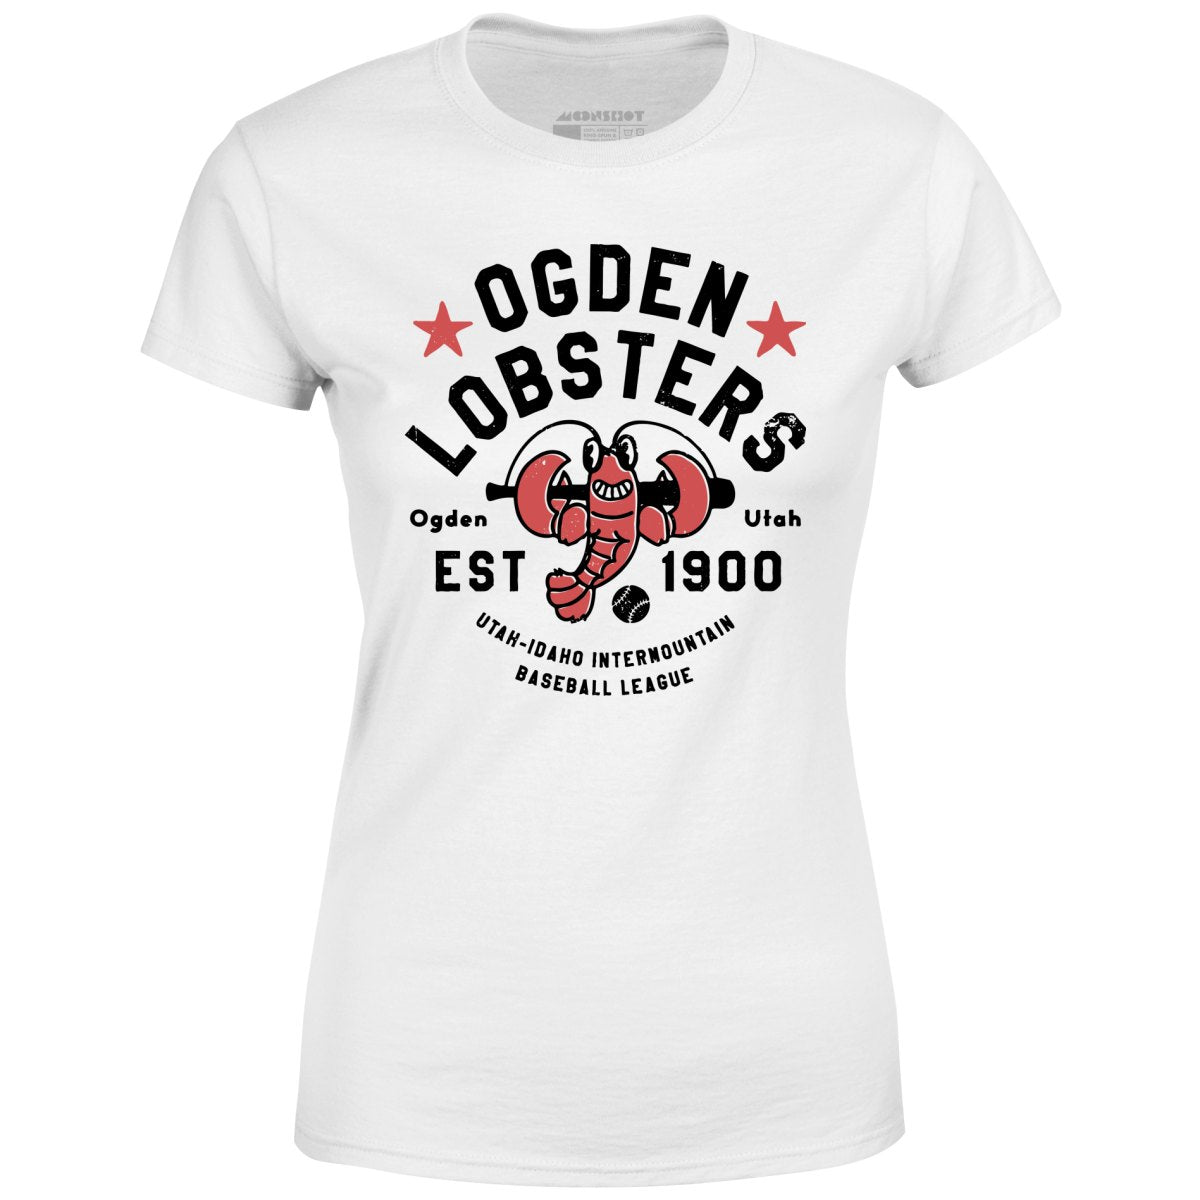 Ogden Lobsters - Utah - Vintage Defunct Baseball Teams - Women's T-Shirt